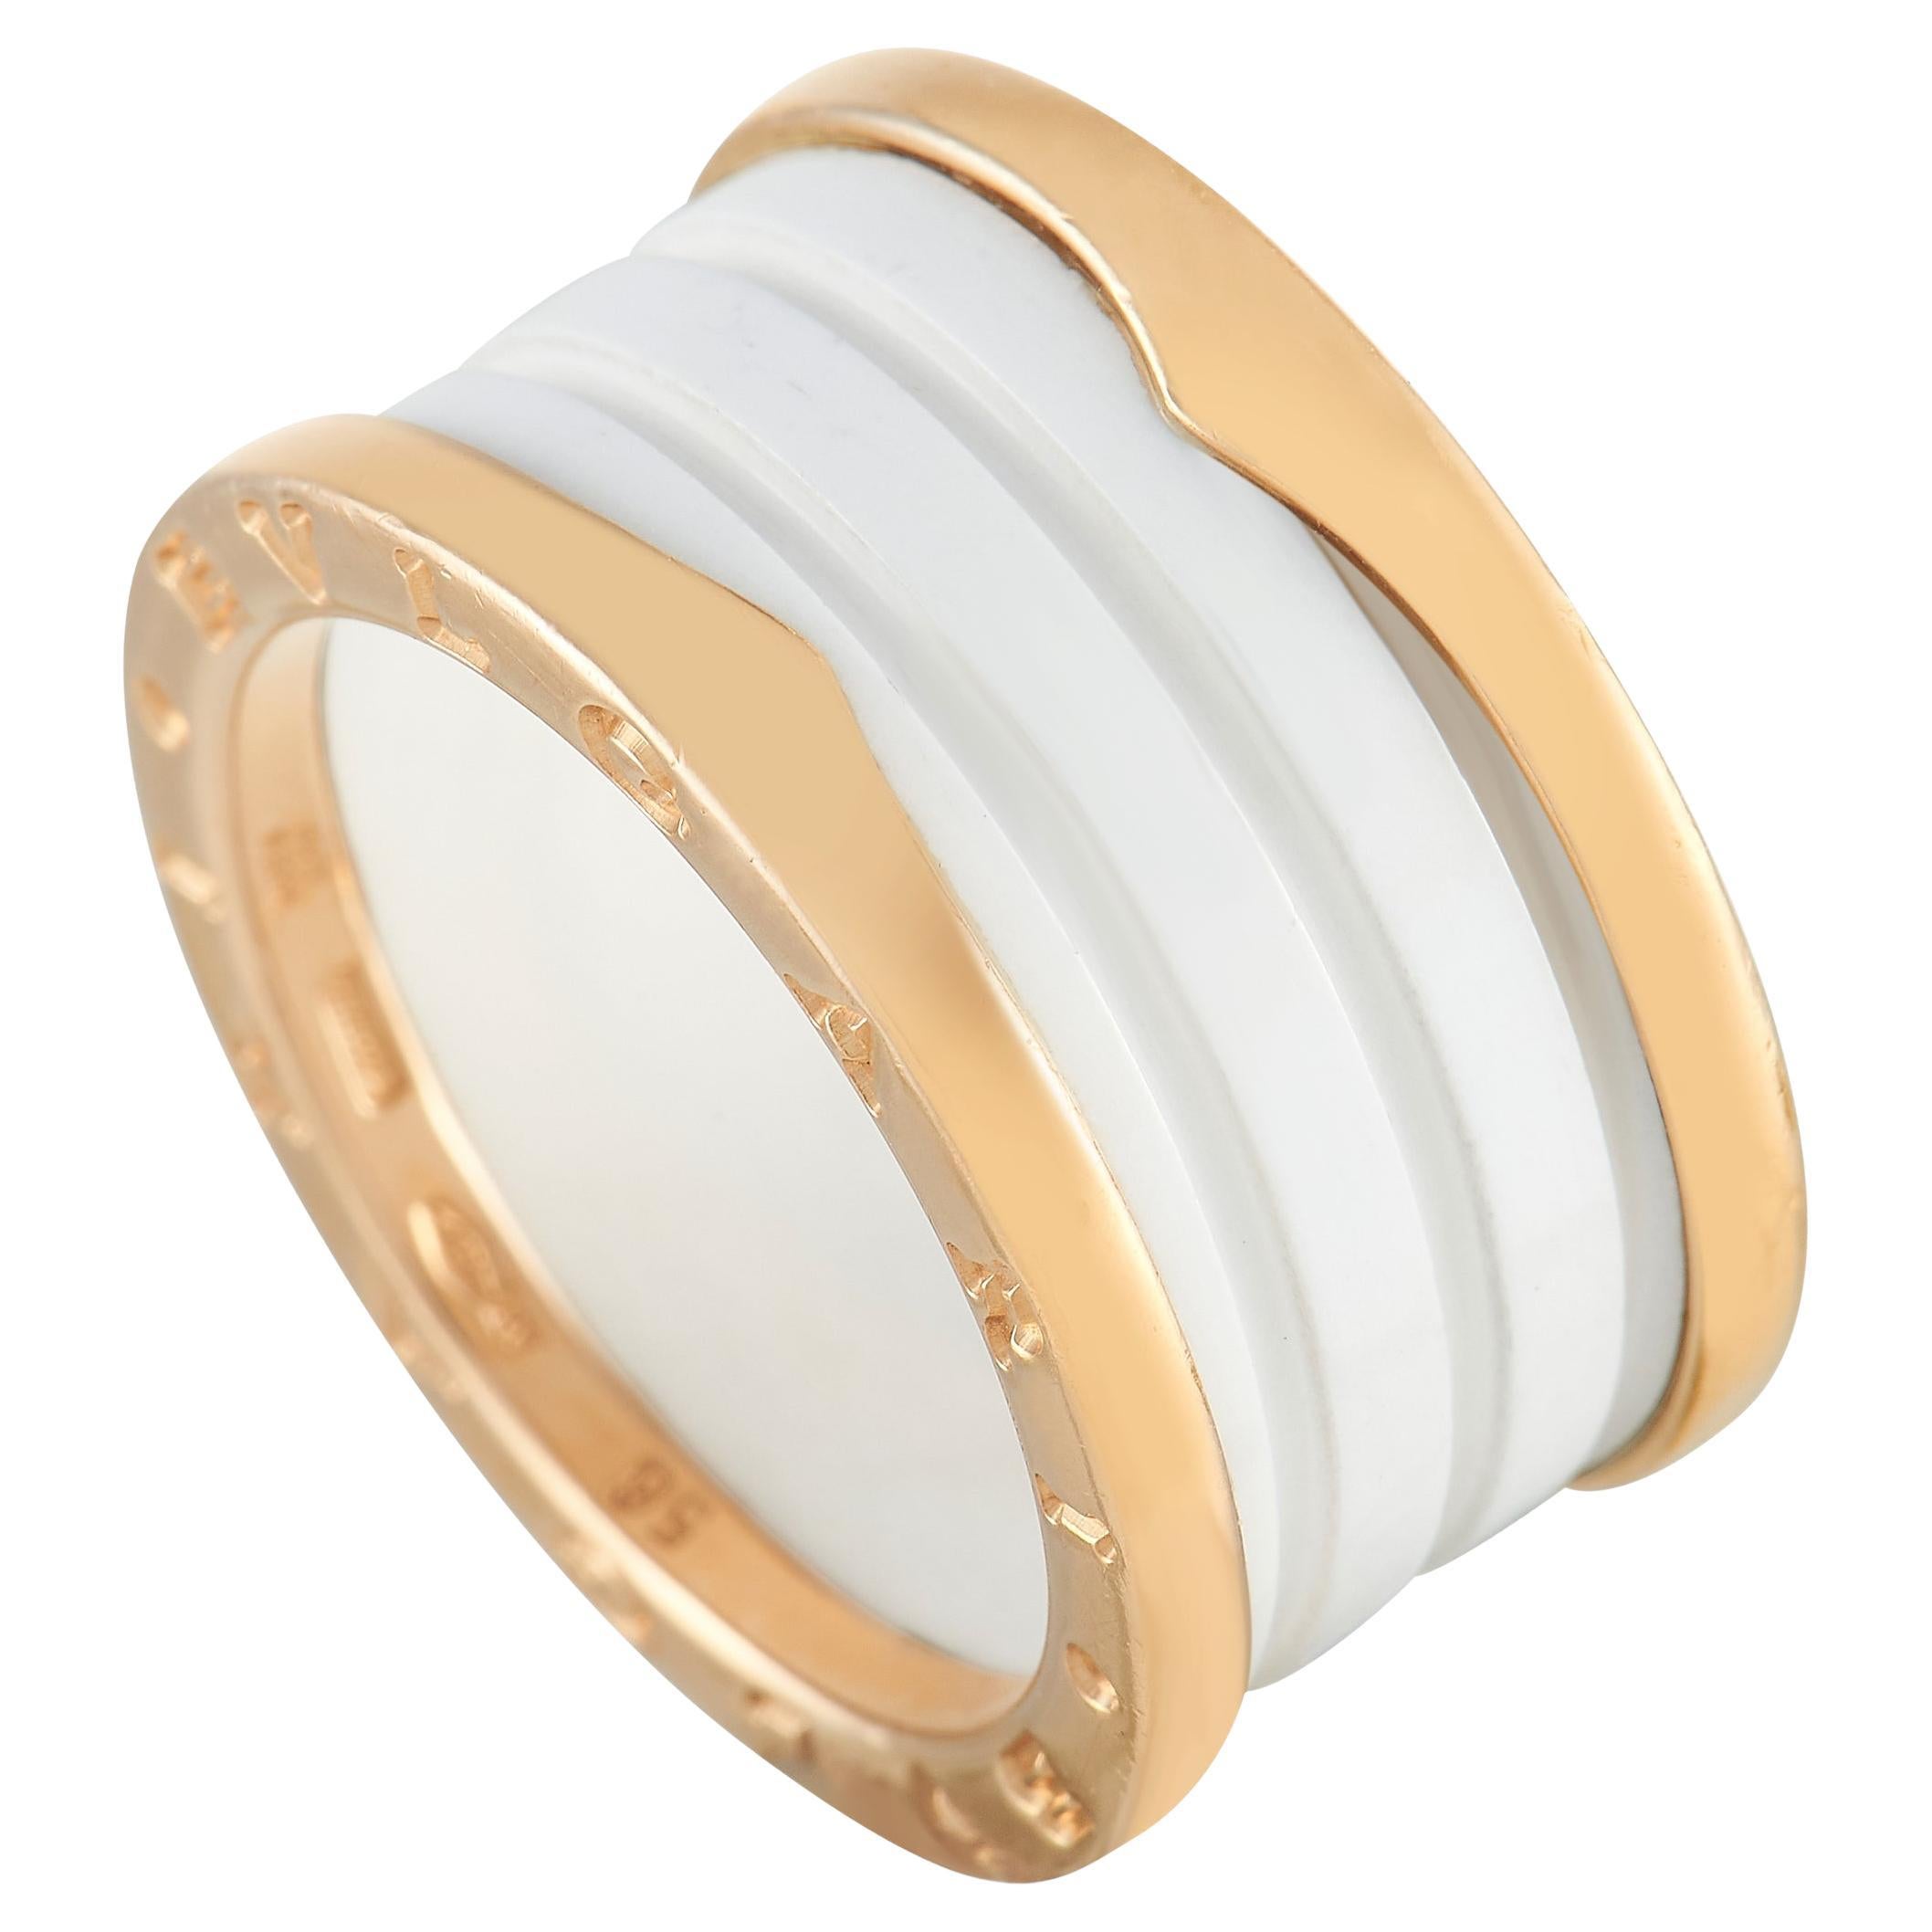 Bvlgari B.Zero1 18K Rose Gold Ceramic Band Ring